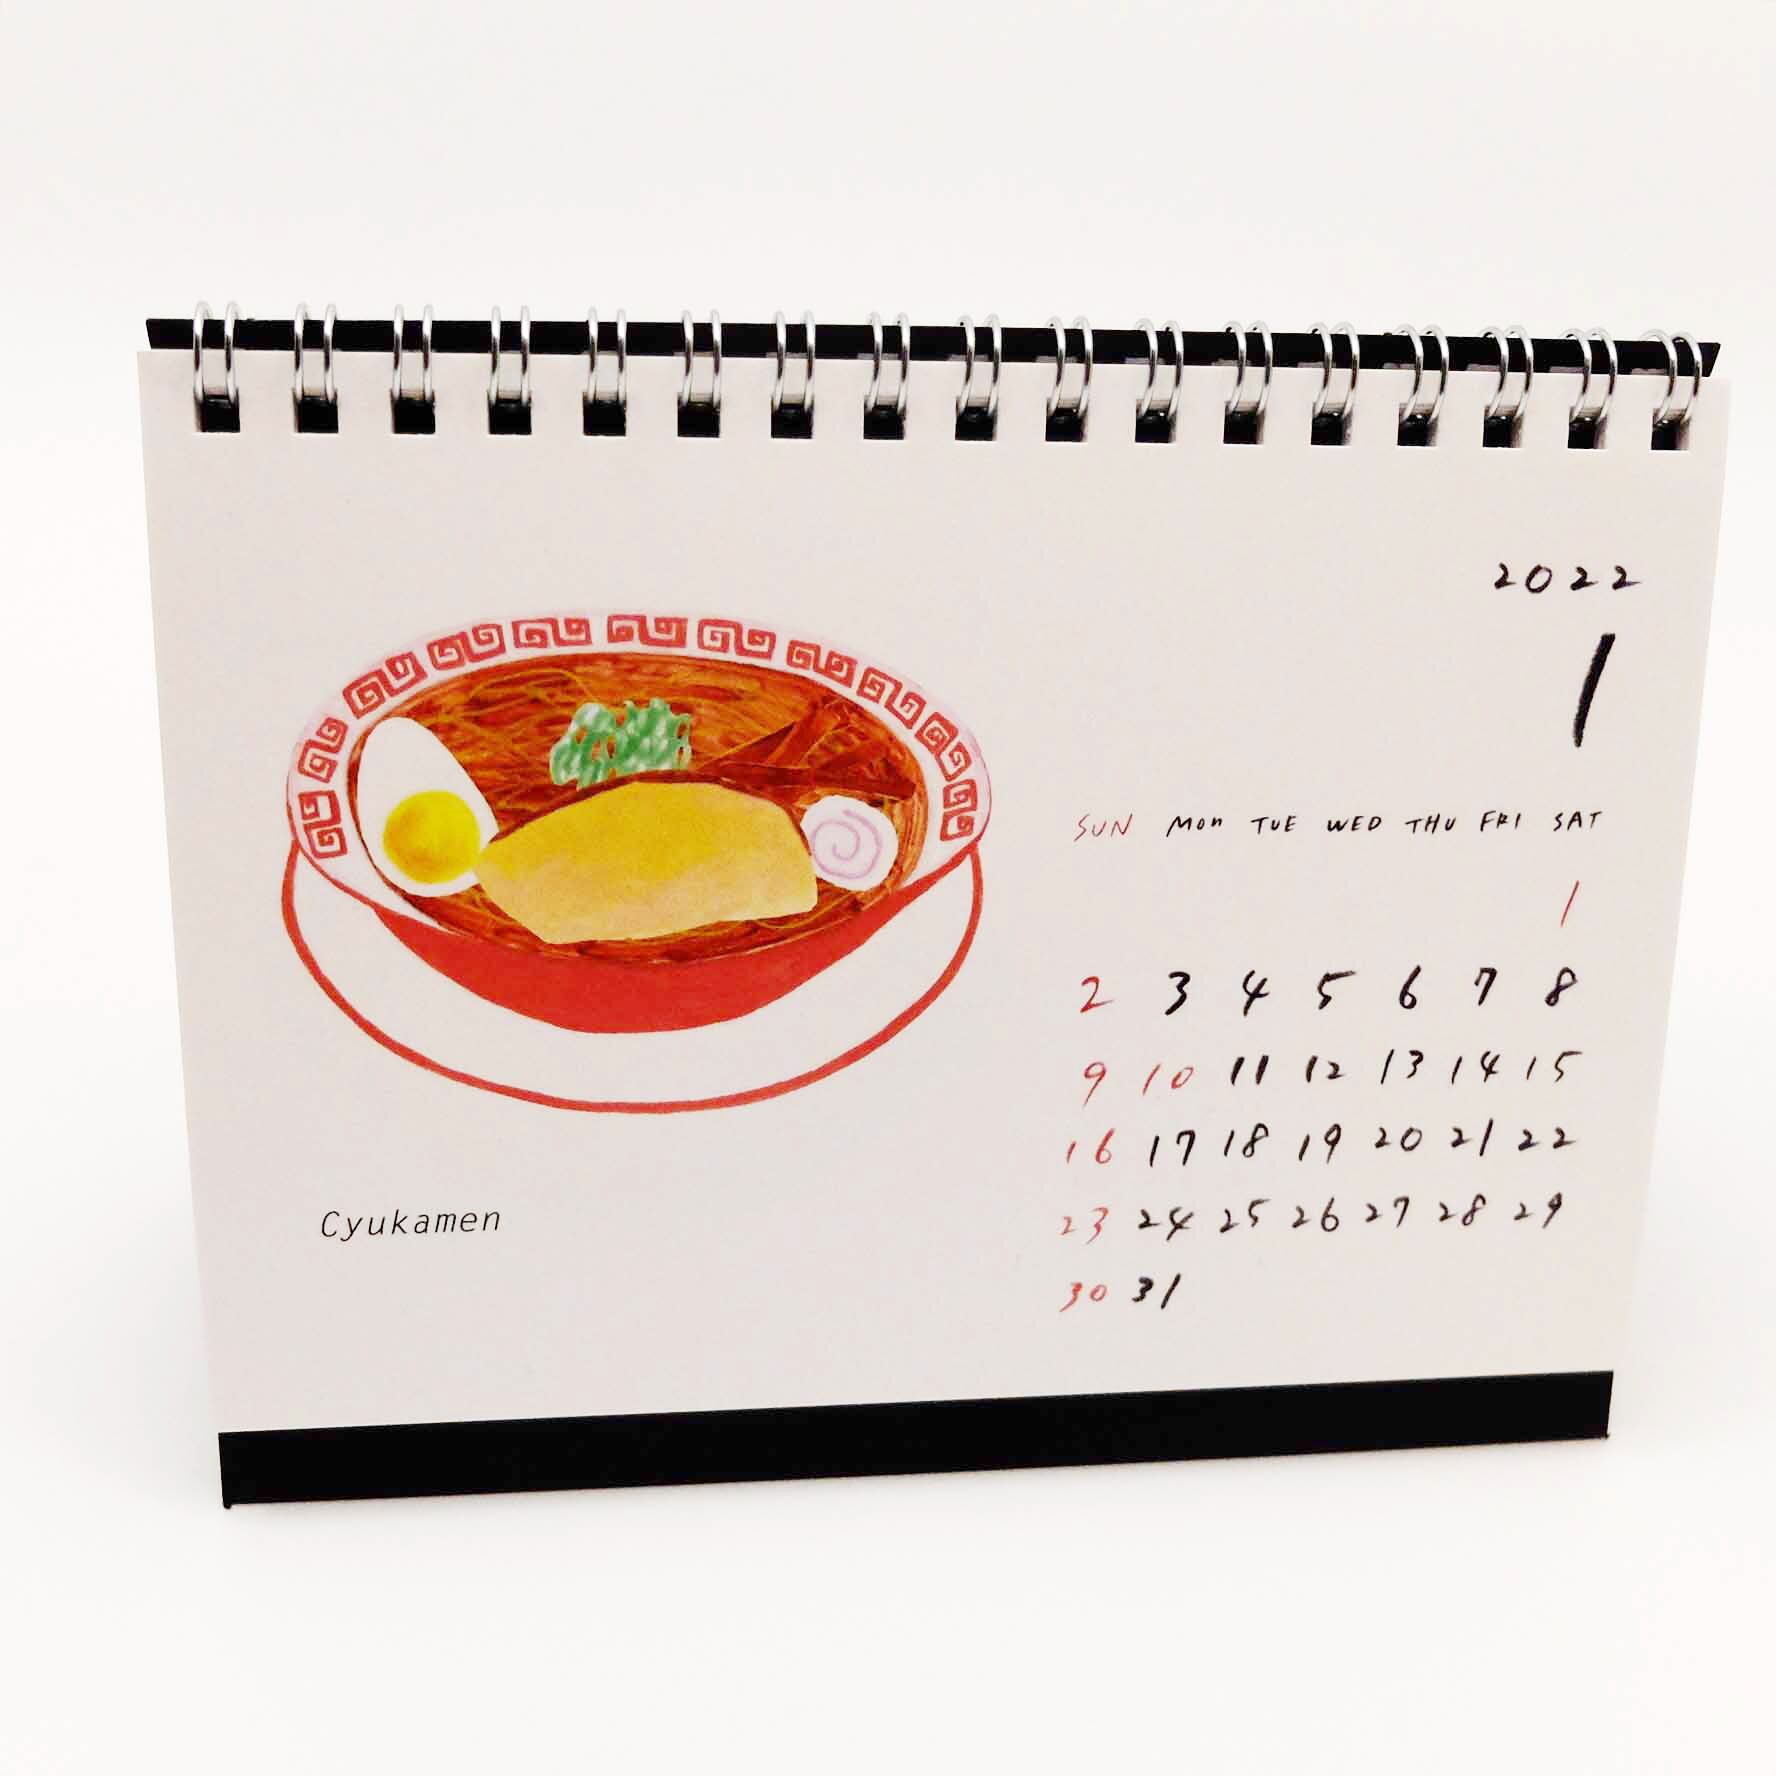 卓上 men 麺 カレンダー2022 / カレンダー / yugengaishamochi ゆうげんがいしゃもち /